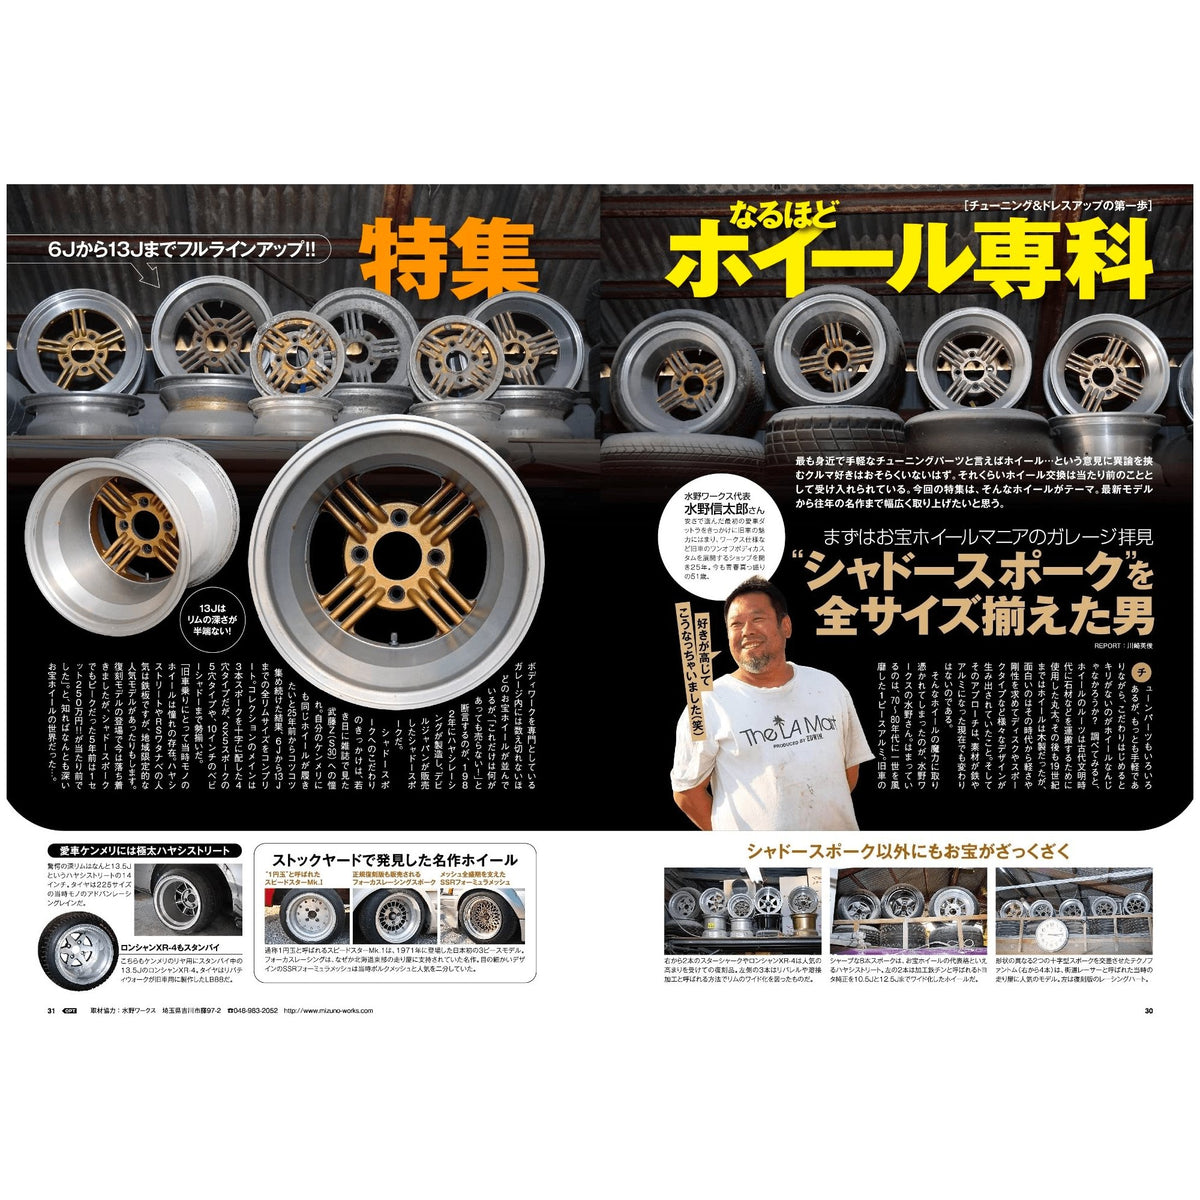 JDM Option Japanese Car Tuning Magazine Dress Up Wheels June 2022 - Sugoi JDM